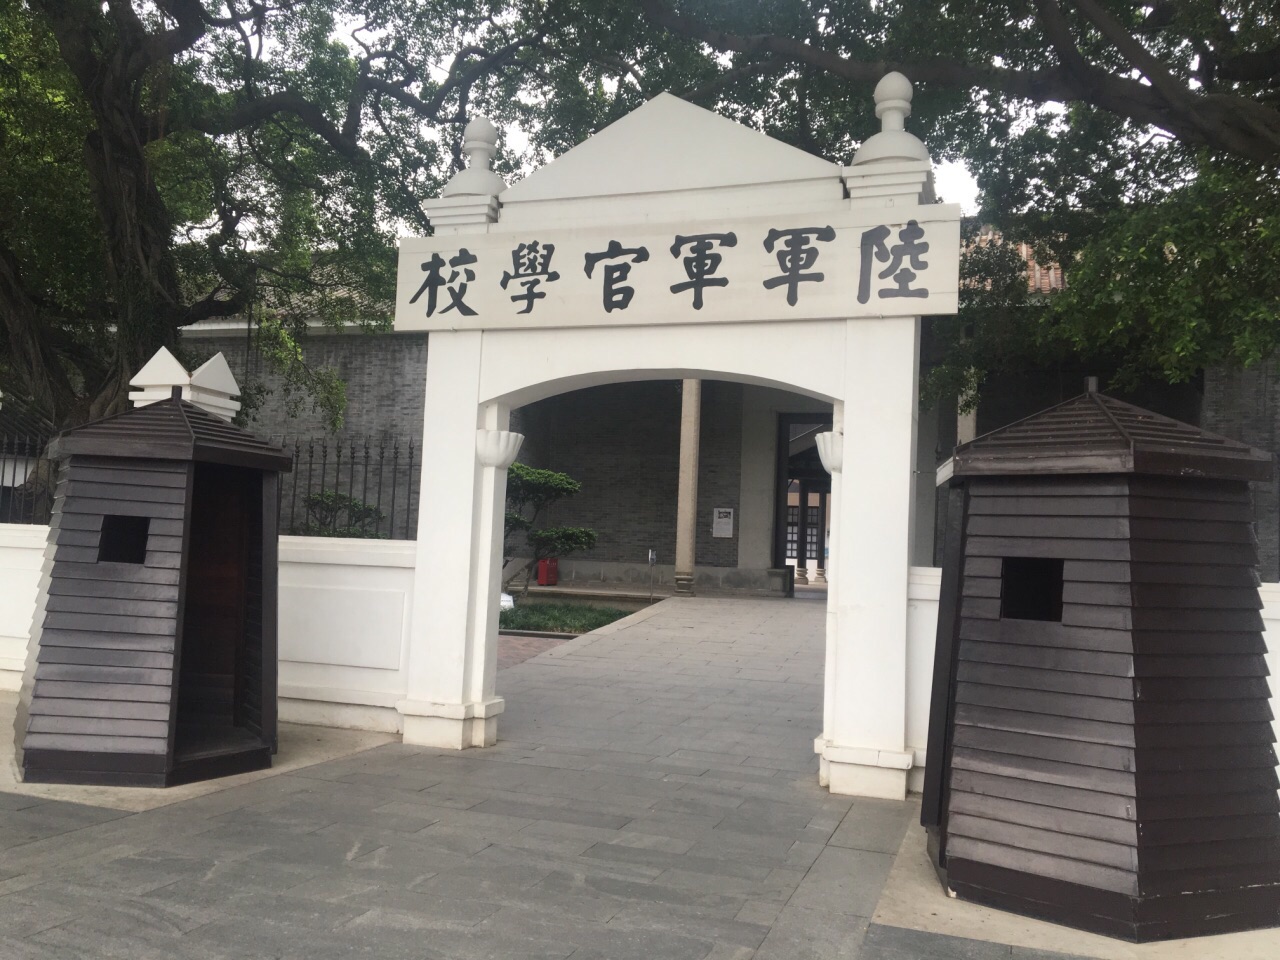 广州黄埔军校旧址纪念馆好玩吗,广州黄埔军校旧址纪念馆景点怎么样